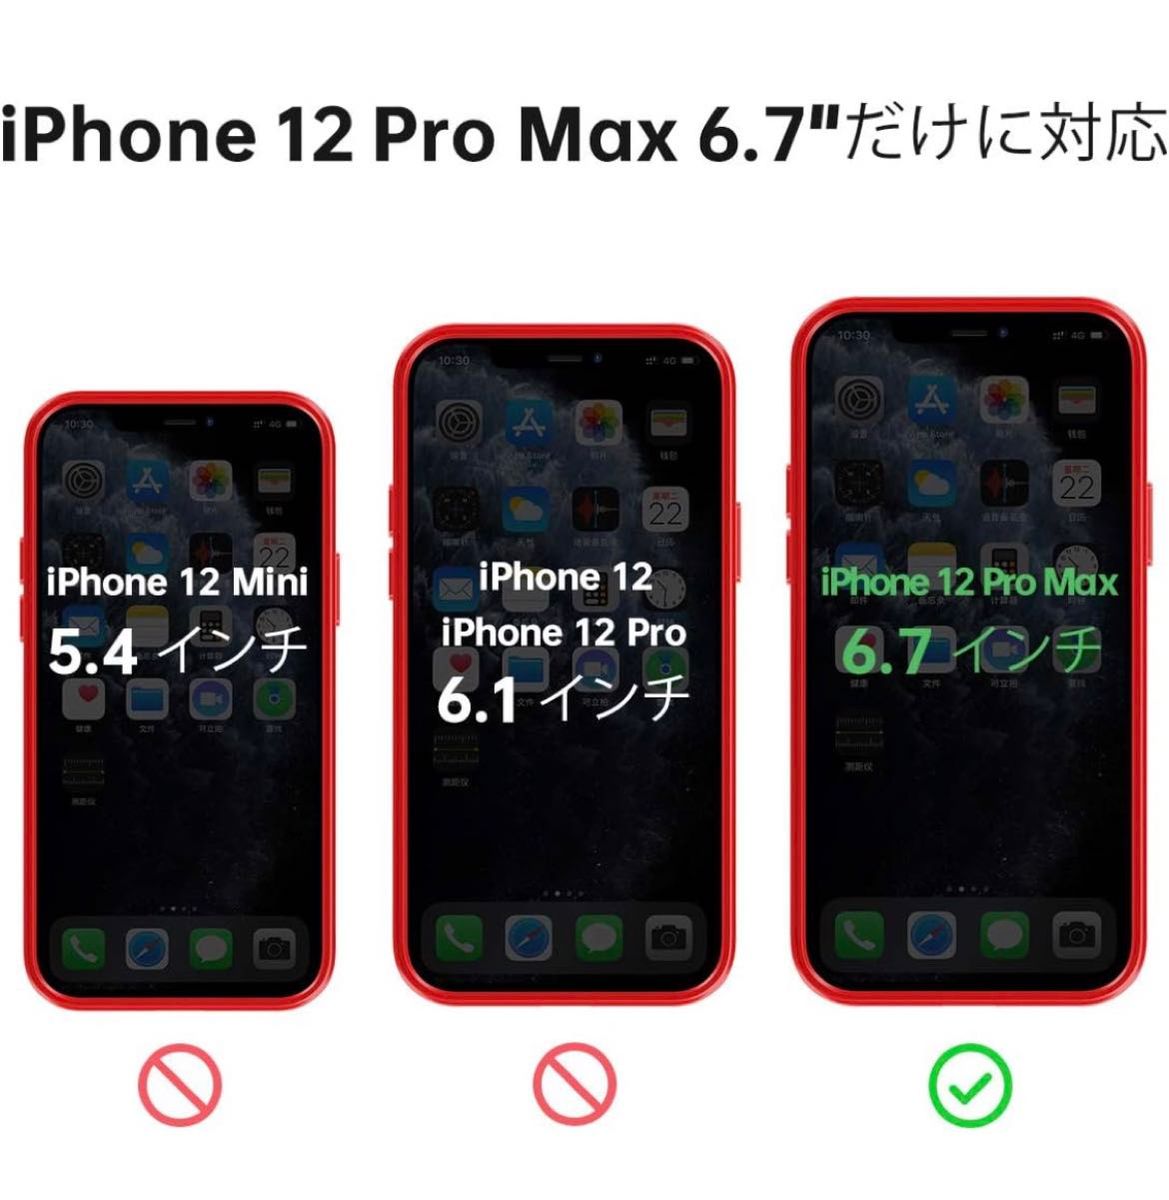 Meifigno iPhone 12 Pro Max ケース 6.7インチ赤